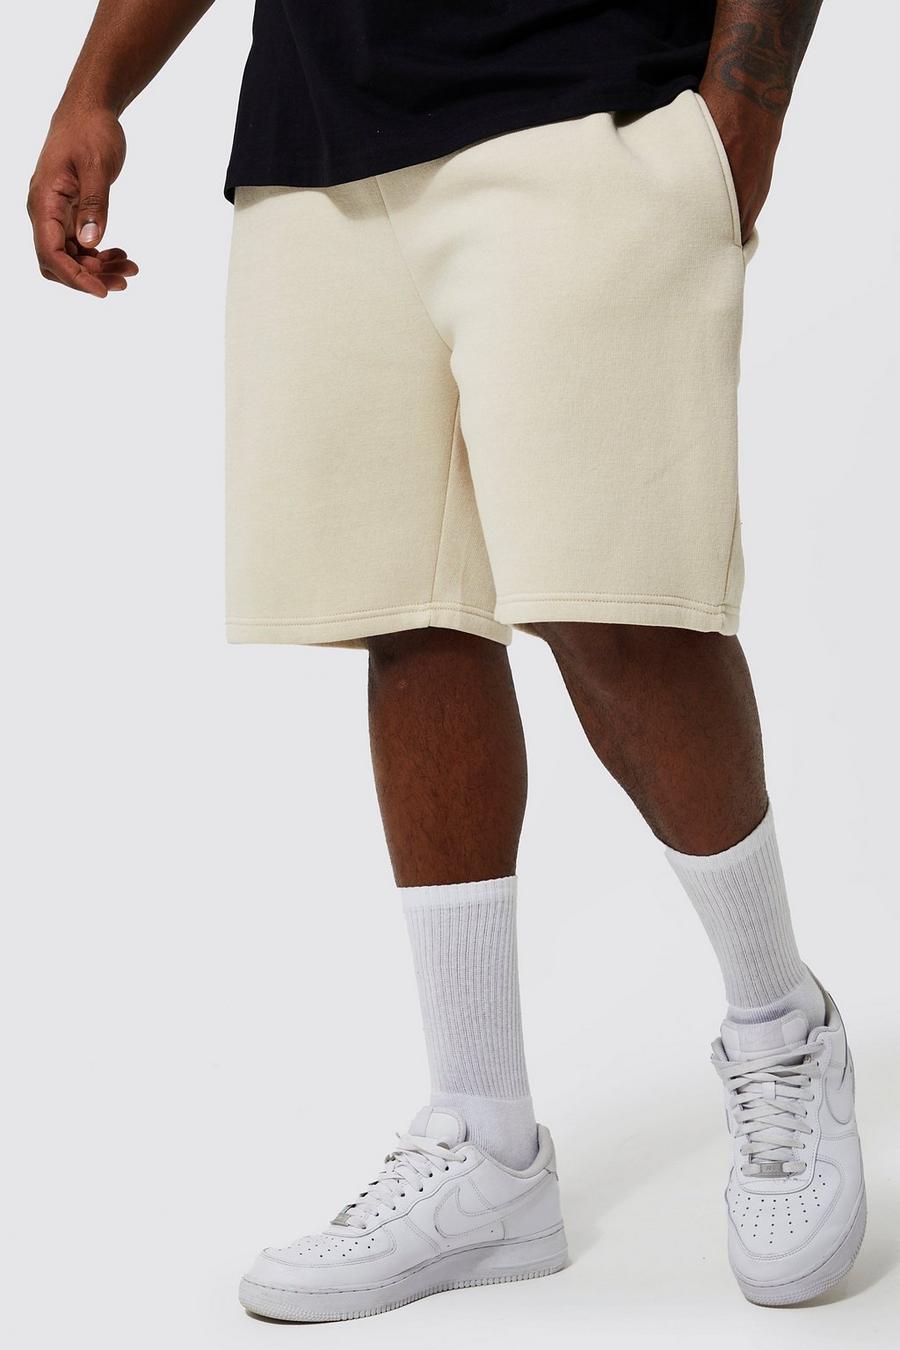 Big & Tall Shorts | Mens Plus Size Shorts | boohoo UK